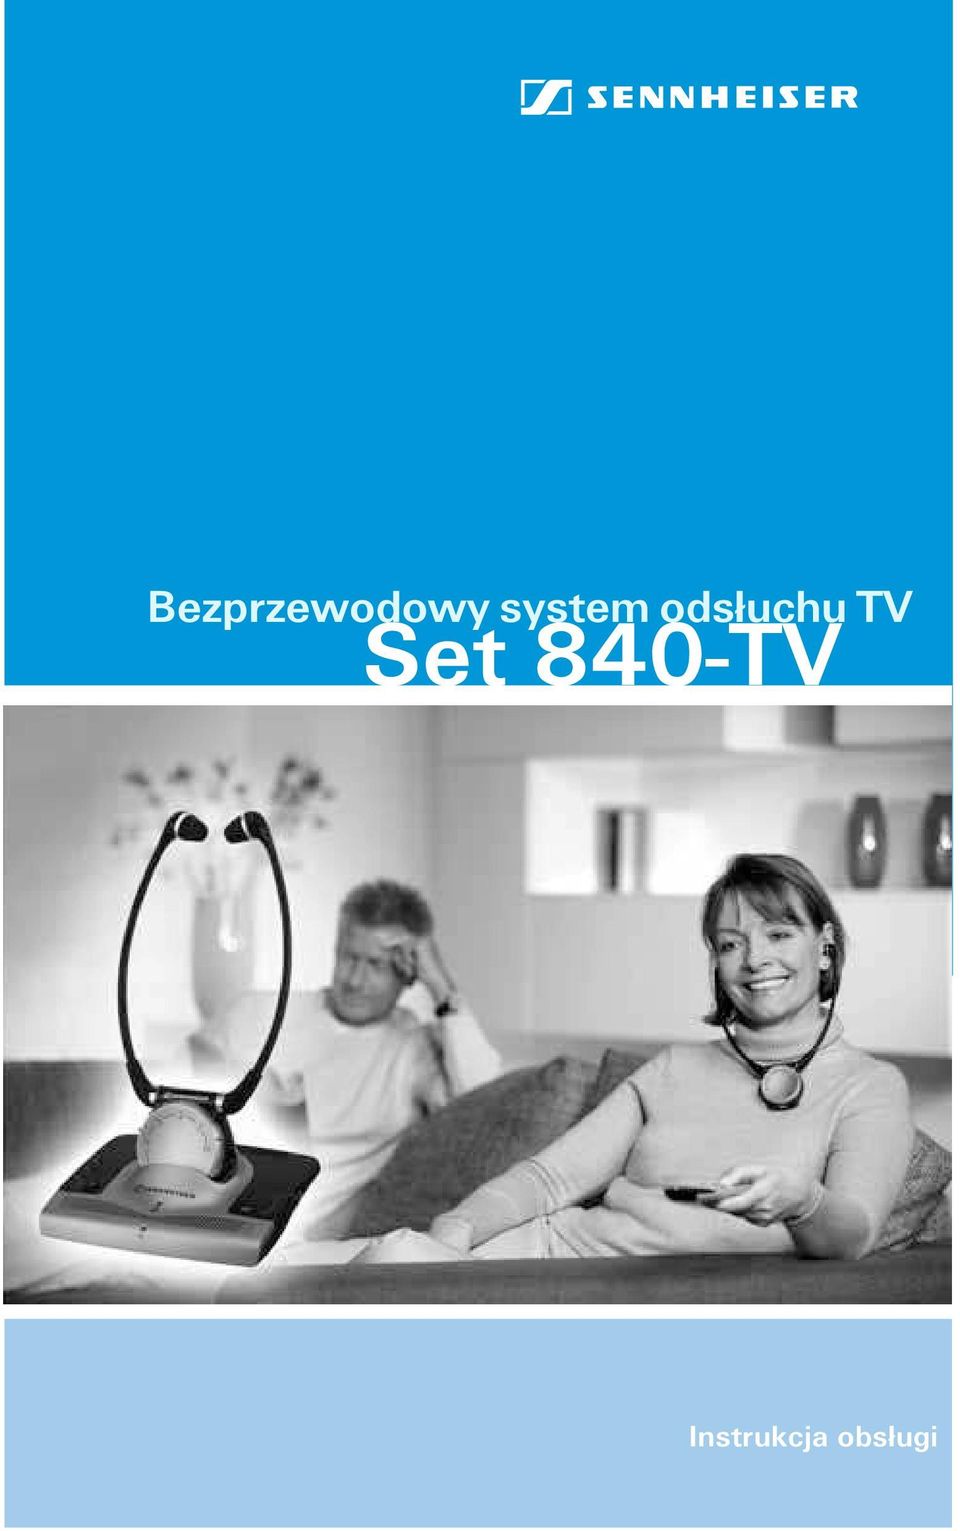 TV Set 840-TV